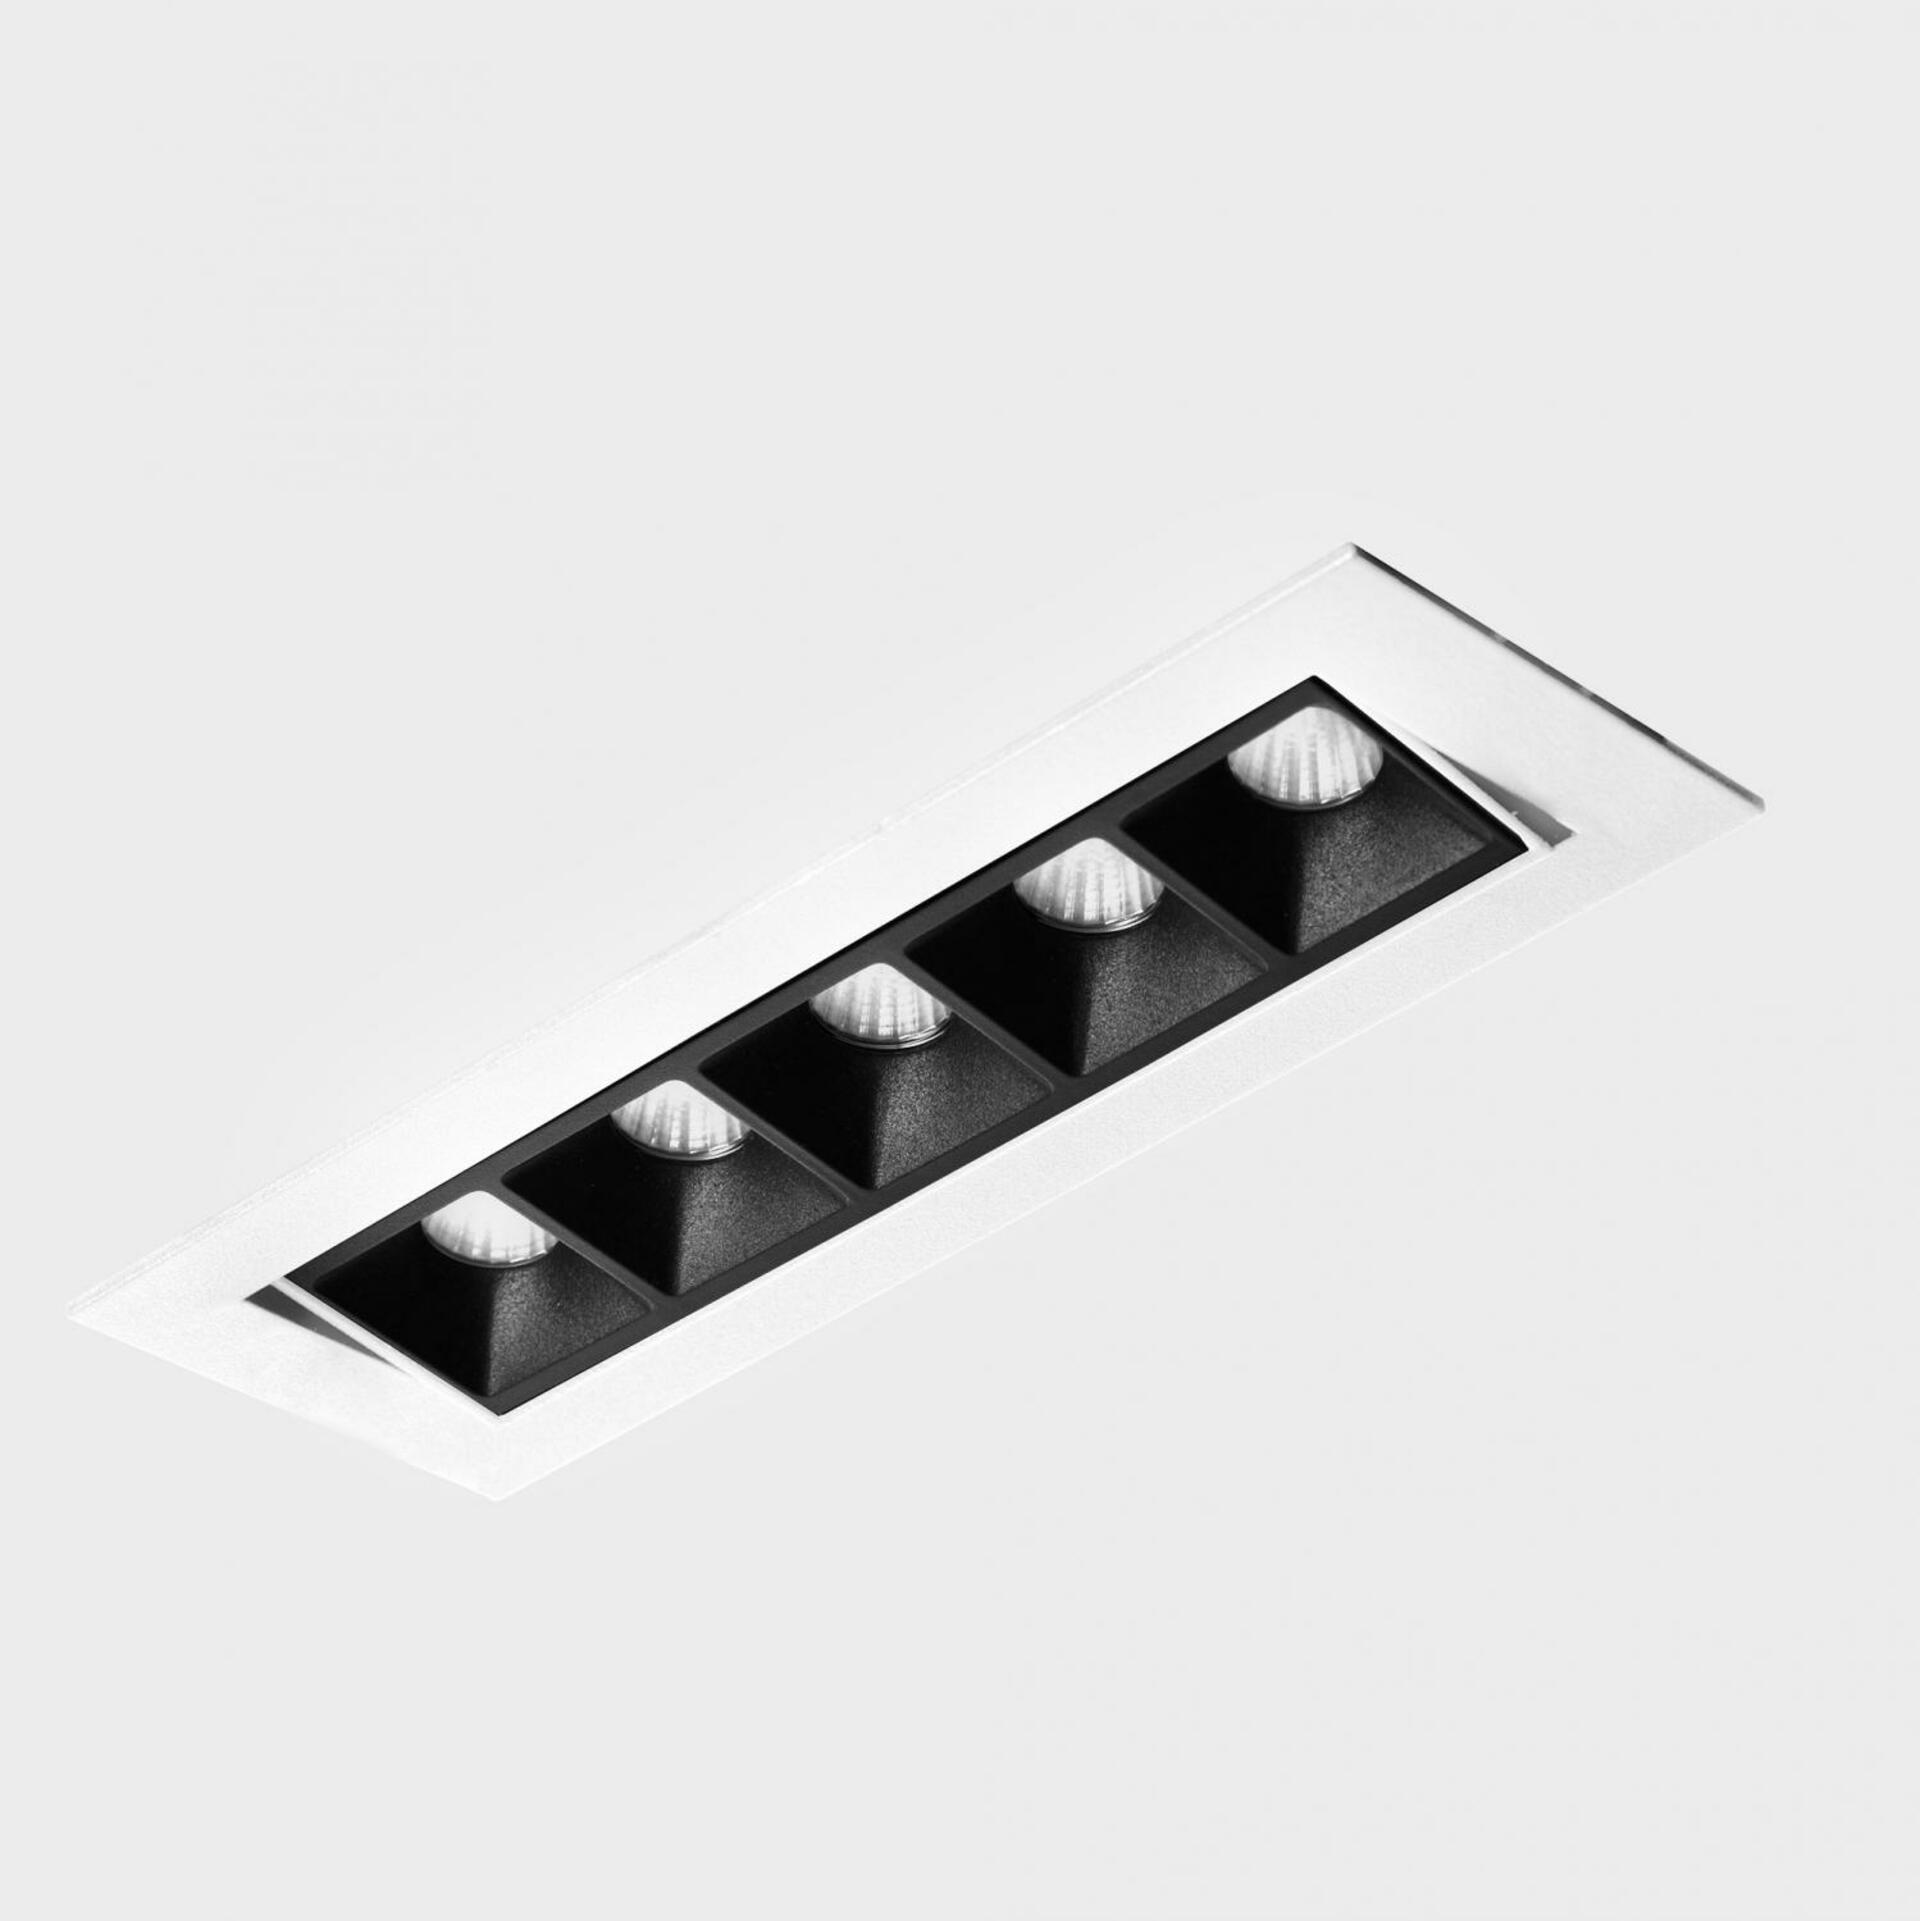 KOHL LIGHTING KOHL-Lighting NSES TILT zapuštěné svítidlo s rámečkem 167x58 mm bílá-černá 10 W CRI 90 3000K DALI